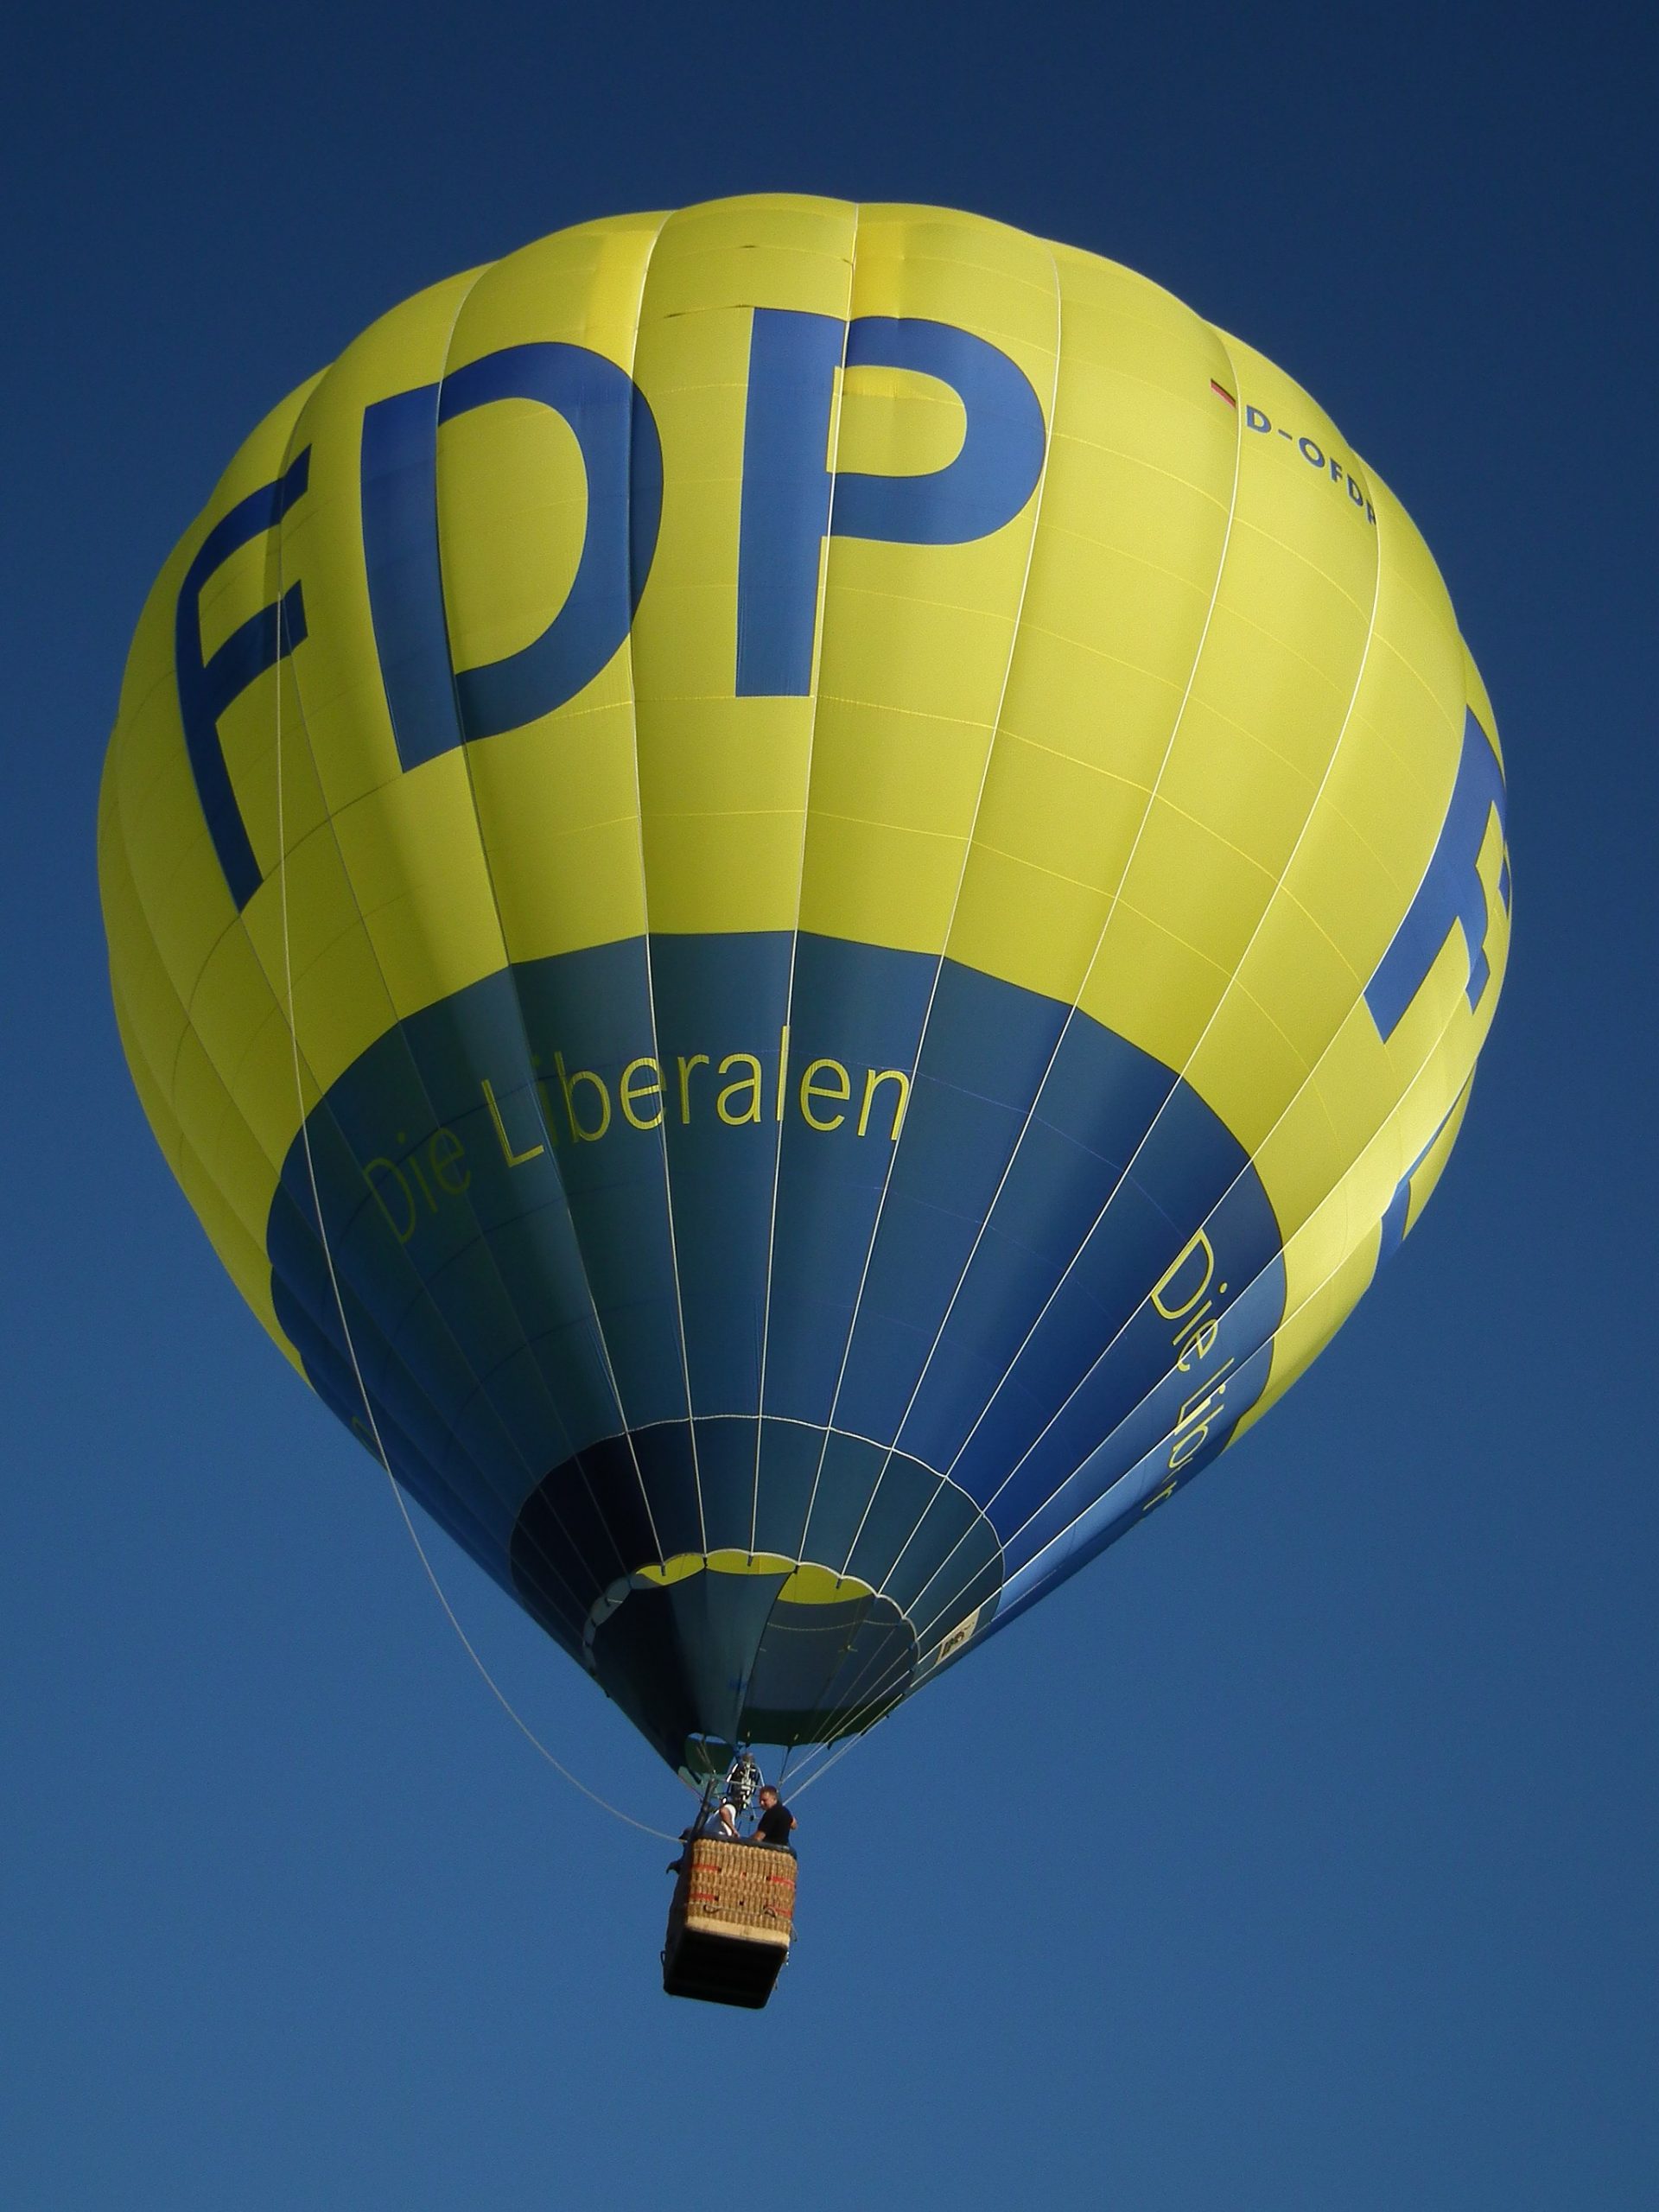 Bild: 4028mdk09, FDP Heißluftballon D-OFDP 2011, CC BY-SA 3.0, via Wikimedia Commons (keine Änderungen vorgenommen)